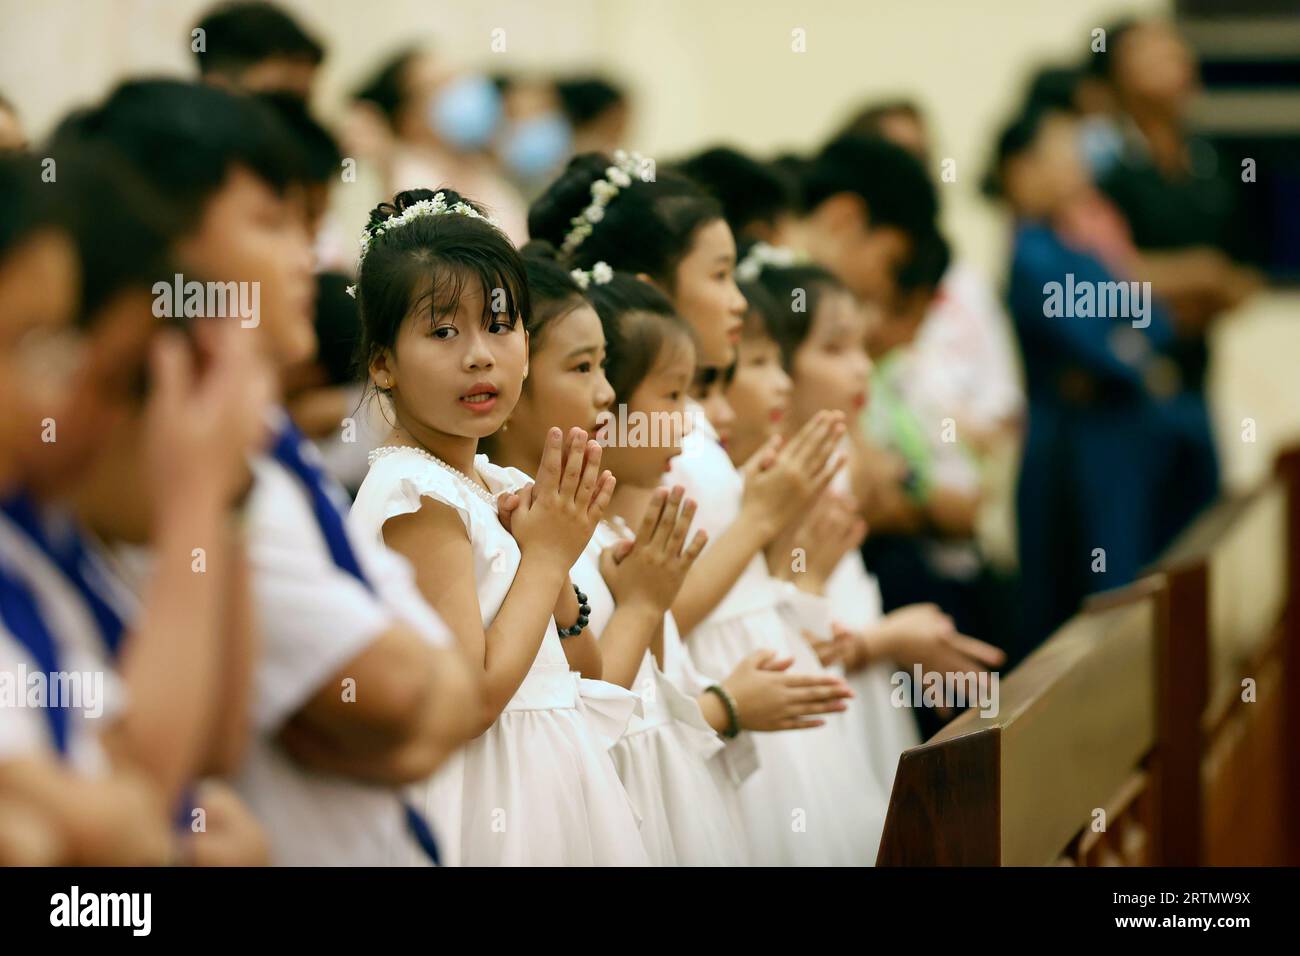 Song Vinh katholische Kirche. Kinder während der Heiligen Donnerstagsmesse. Der Heilige Donnerstag ist das Gedenken an das Letzte Abendmahl Jesu Christi. Vietnam. Stockfoto